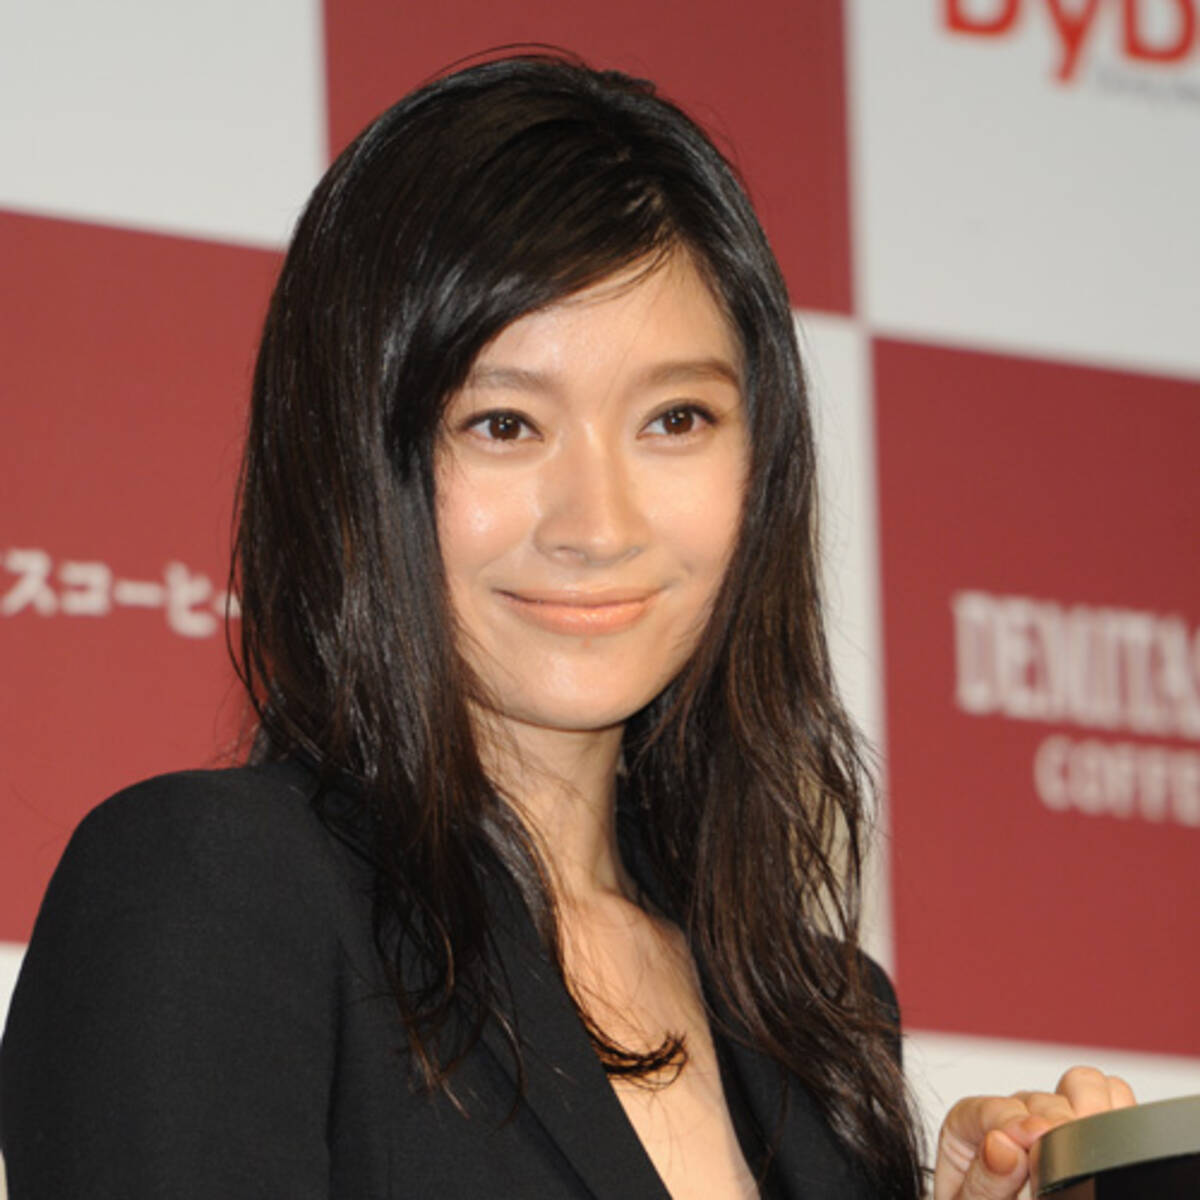 篠原涼子 離婚危機報道 ホントの原因は フラフラ癖 という説 18年8月17日 エキサイトニュース